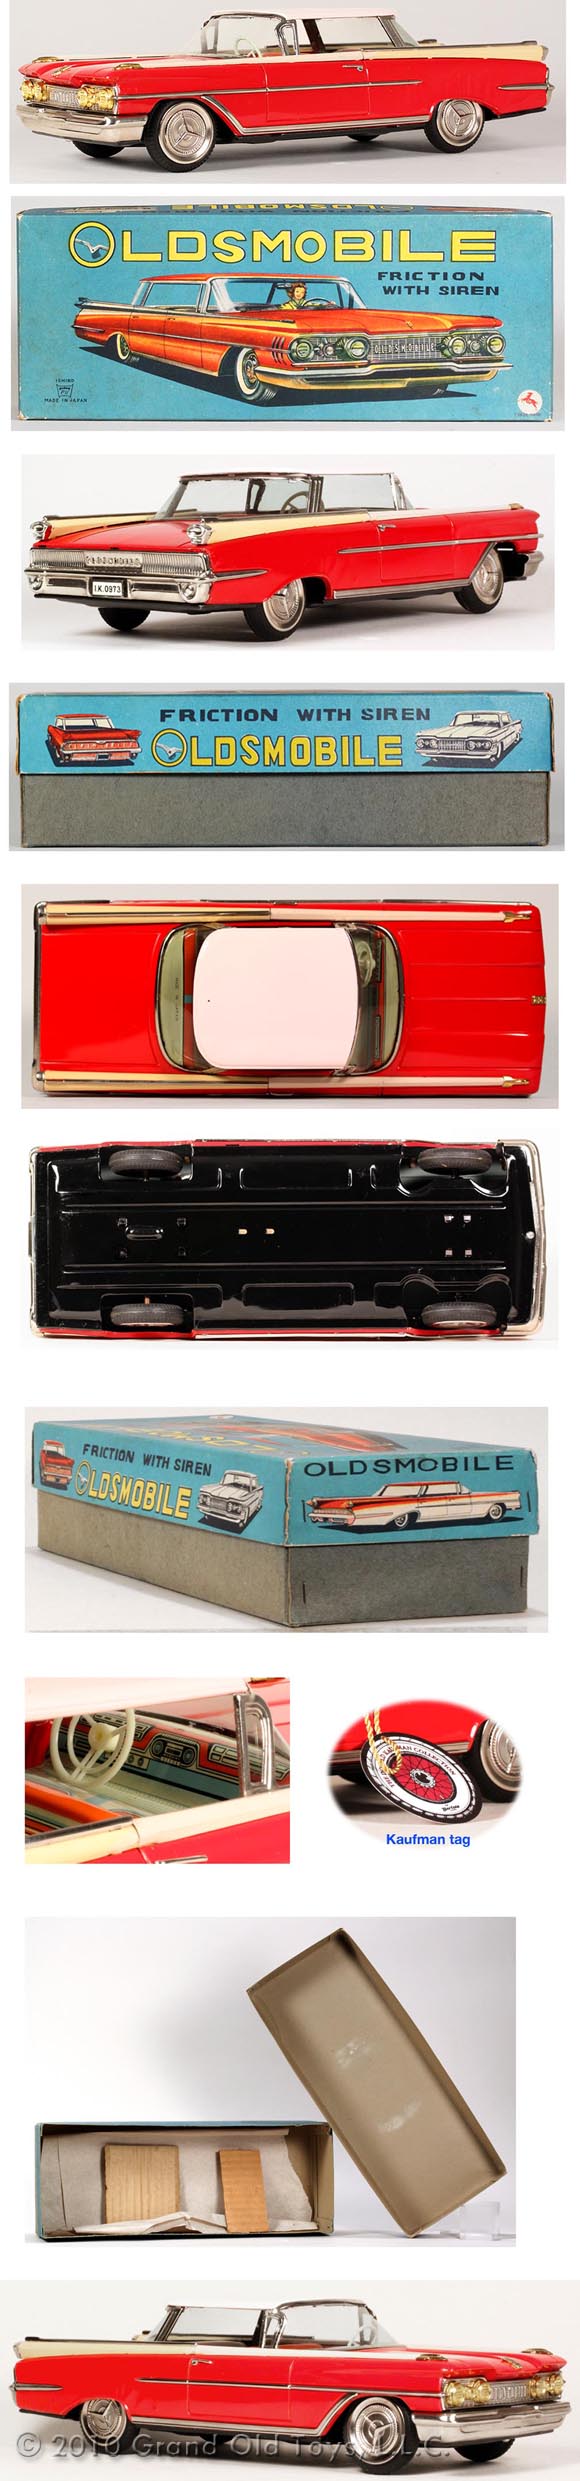 1959 Ichiko, Oldsmobile-88 2dr. Hardtop In Original Box